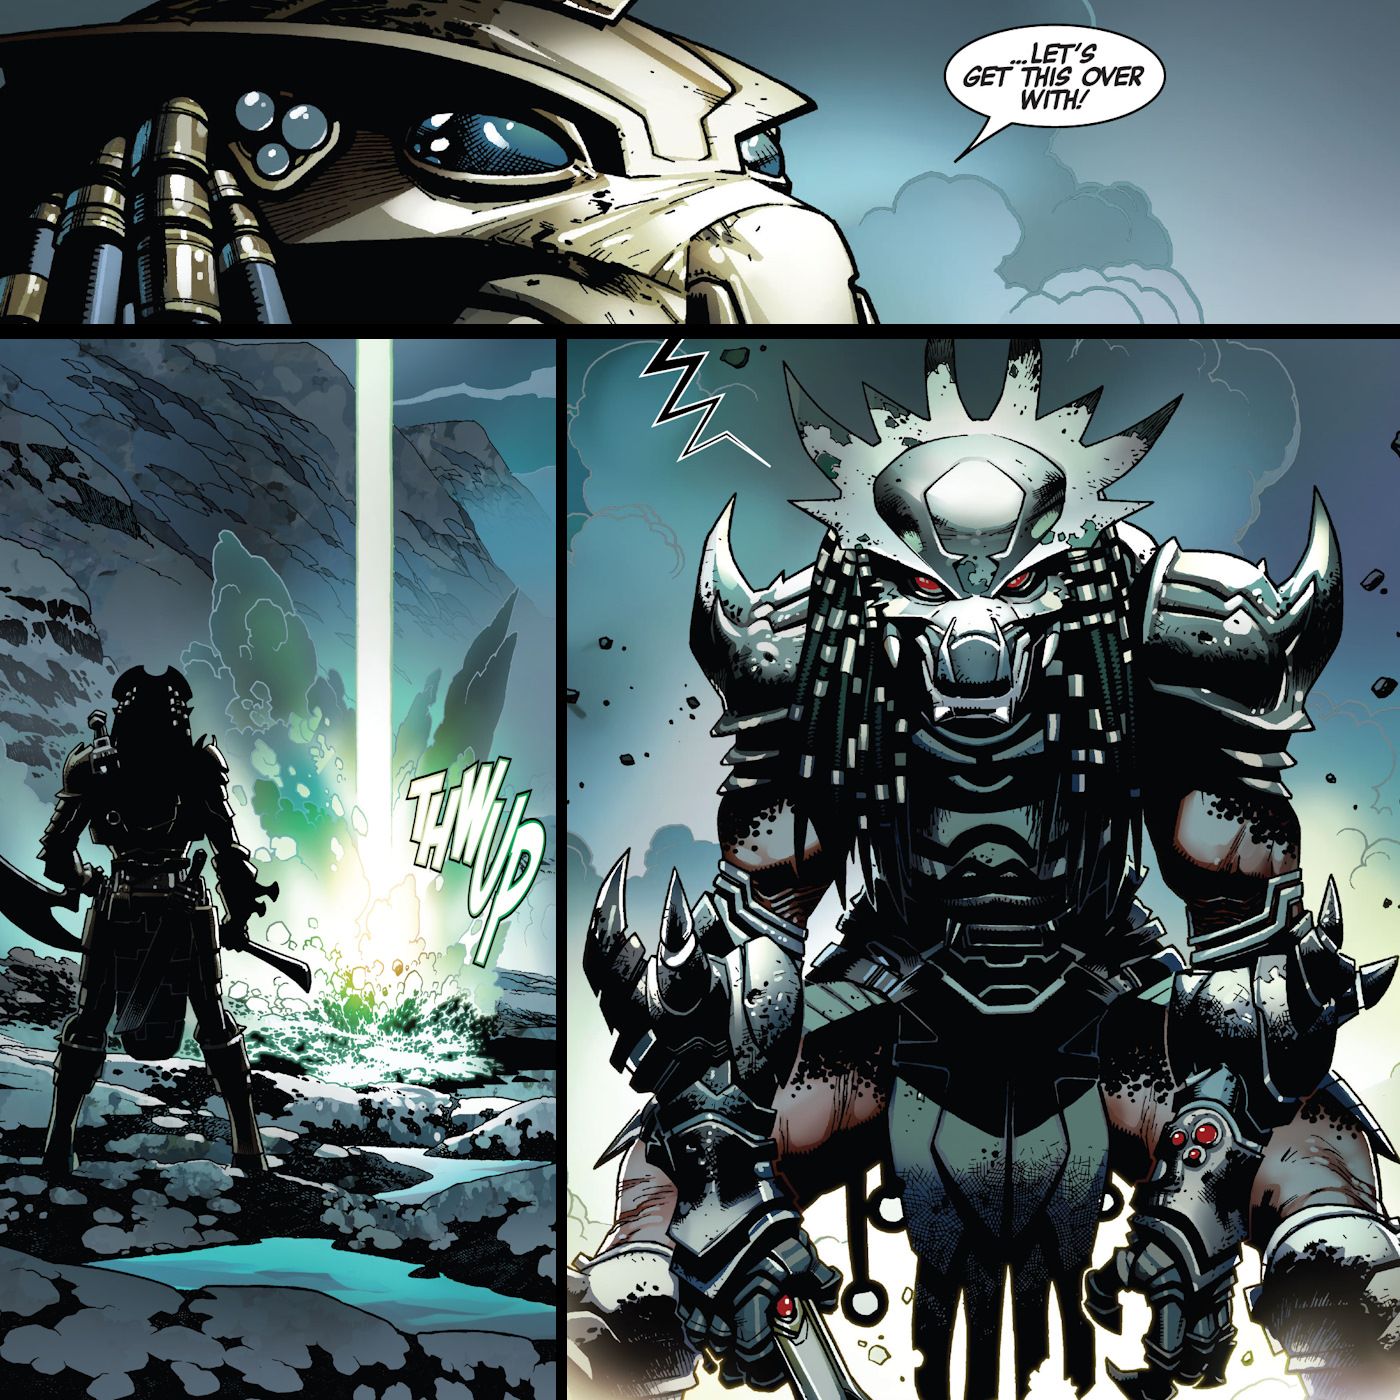 Predator in Samurai Armor Attacks Theta in Marvel Comic